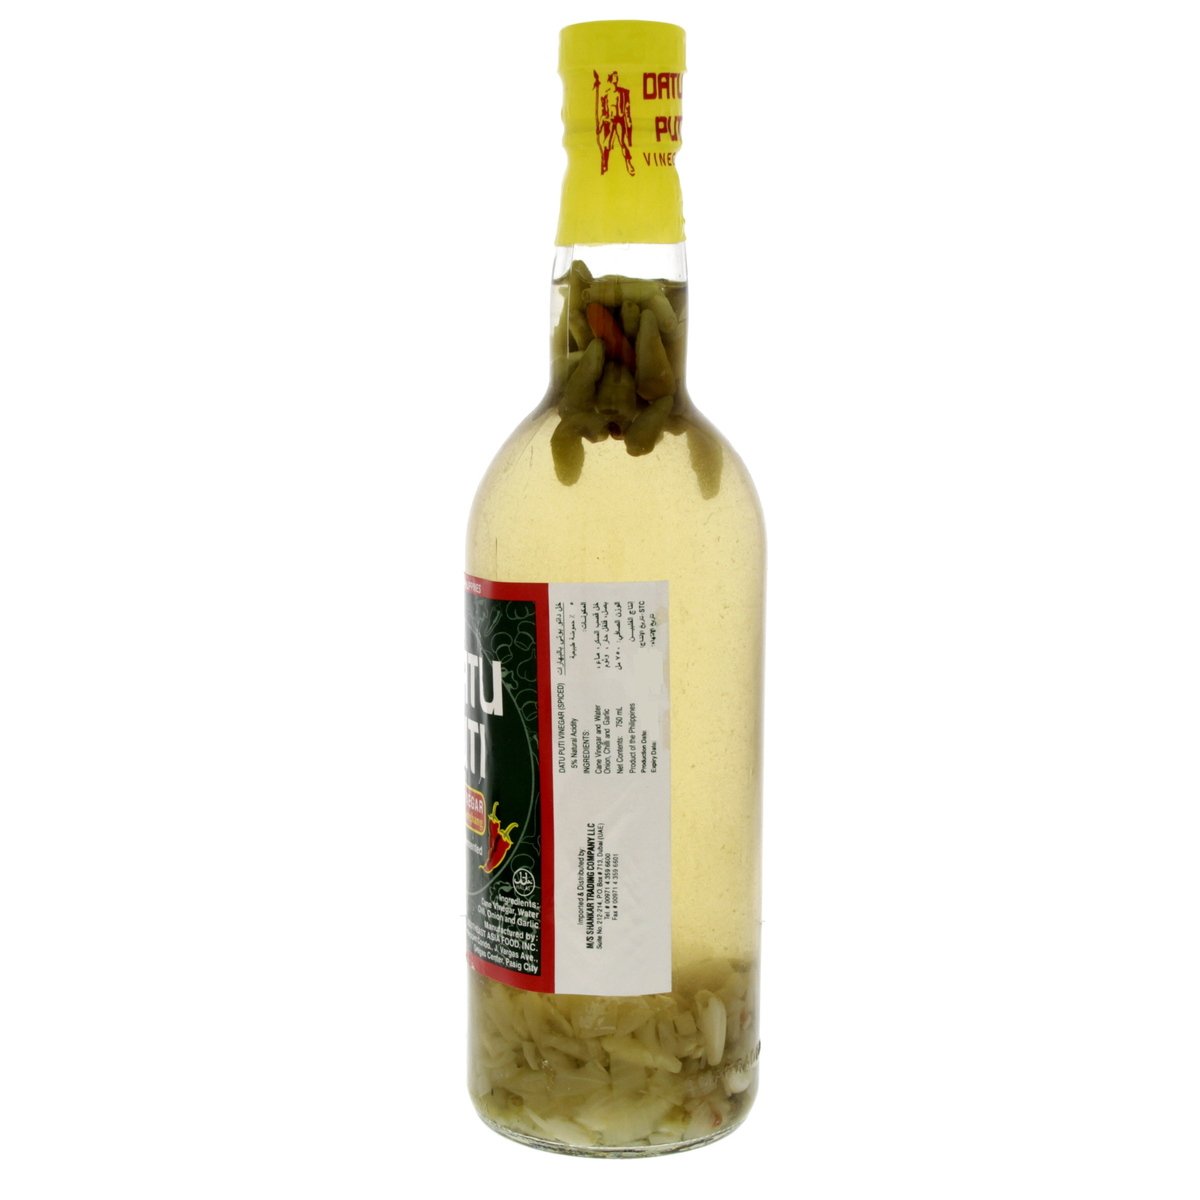 Datu Puti Spiced Vinegar 750 ml